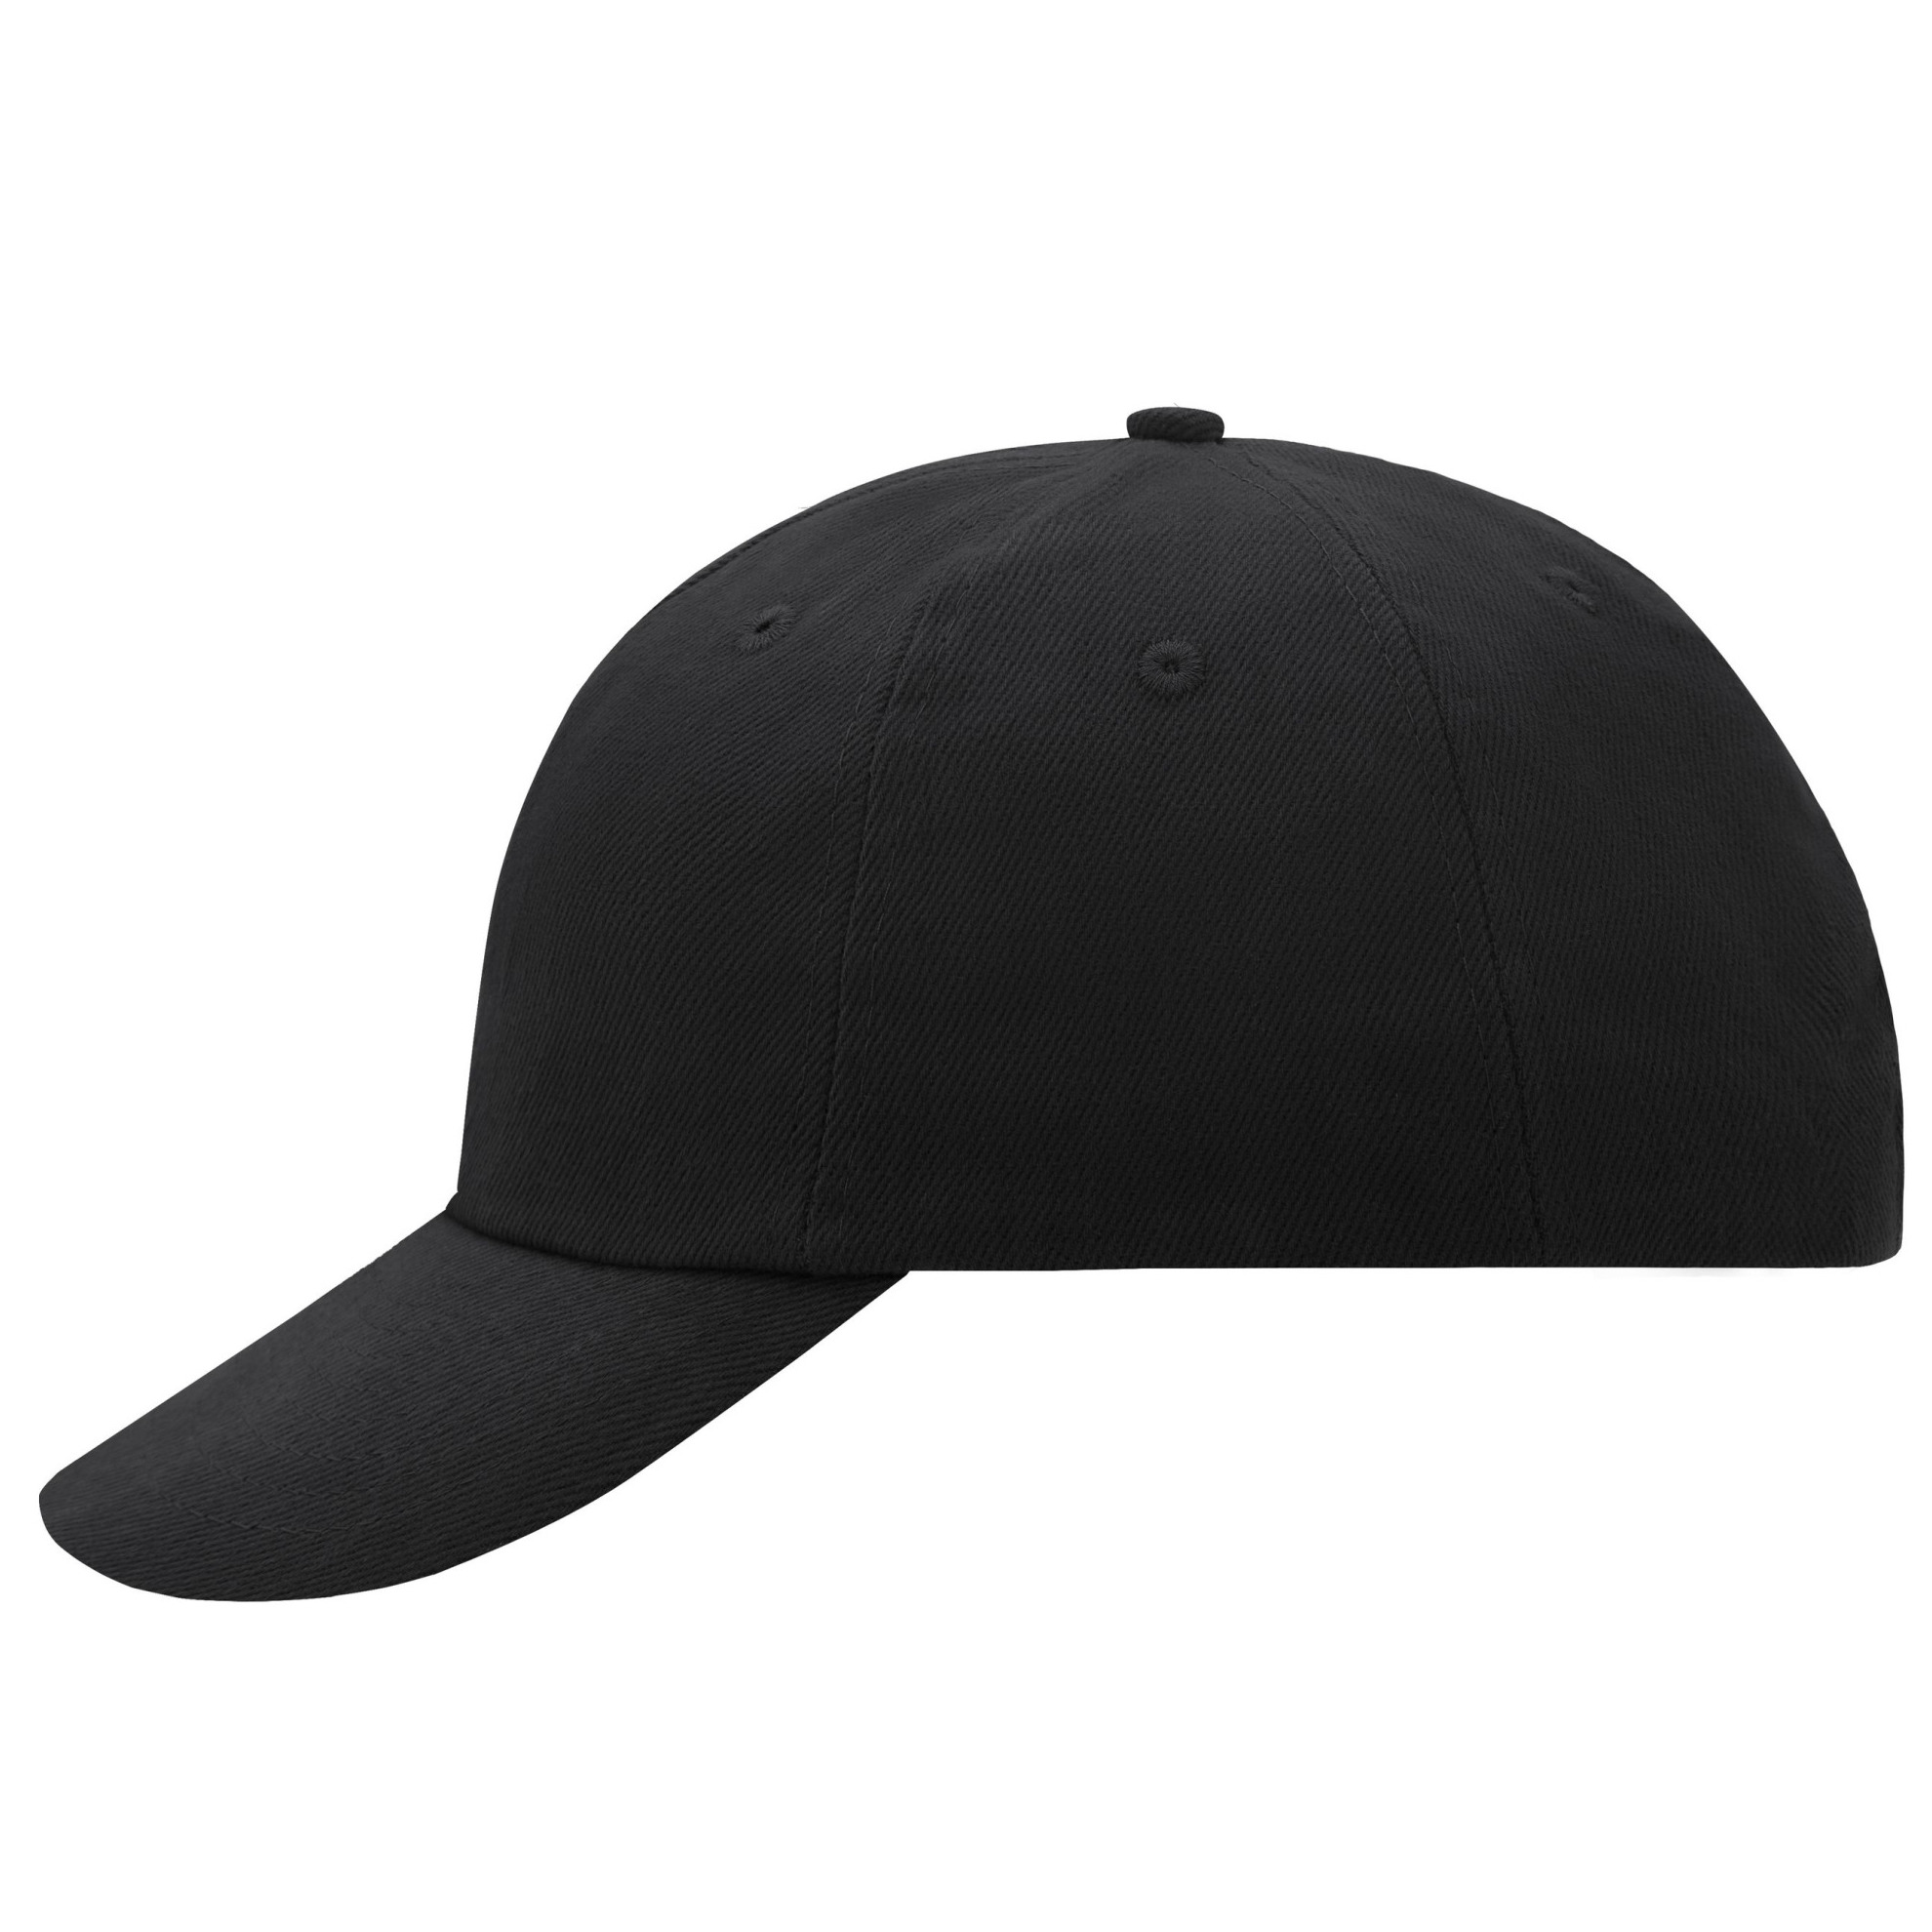 Zwarte baseballcap voor volwassenen